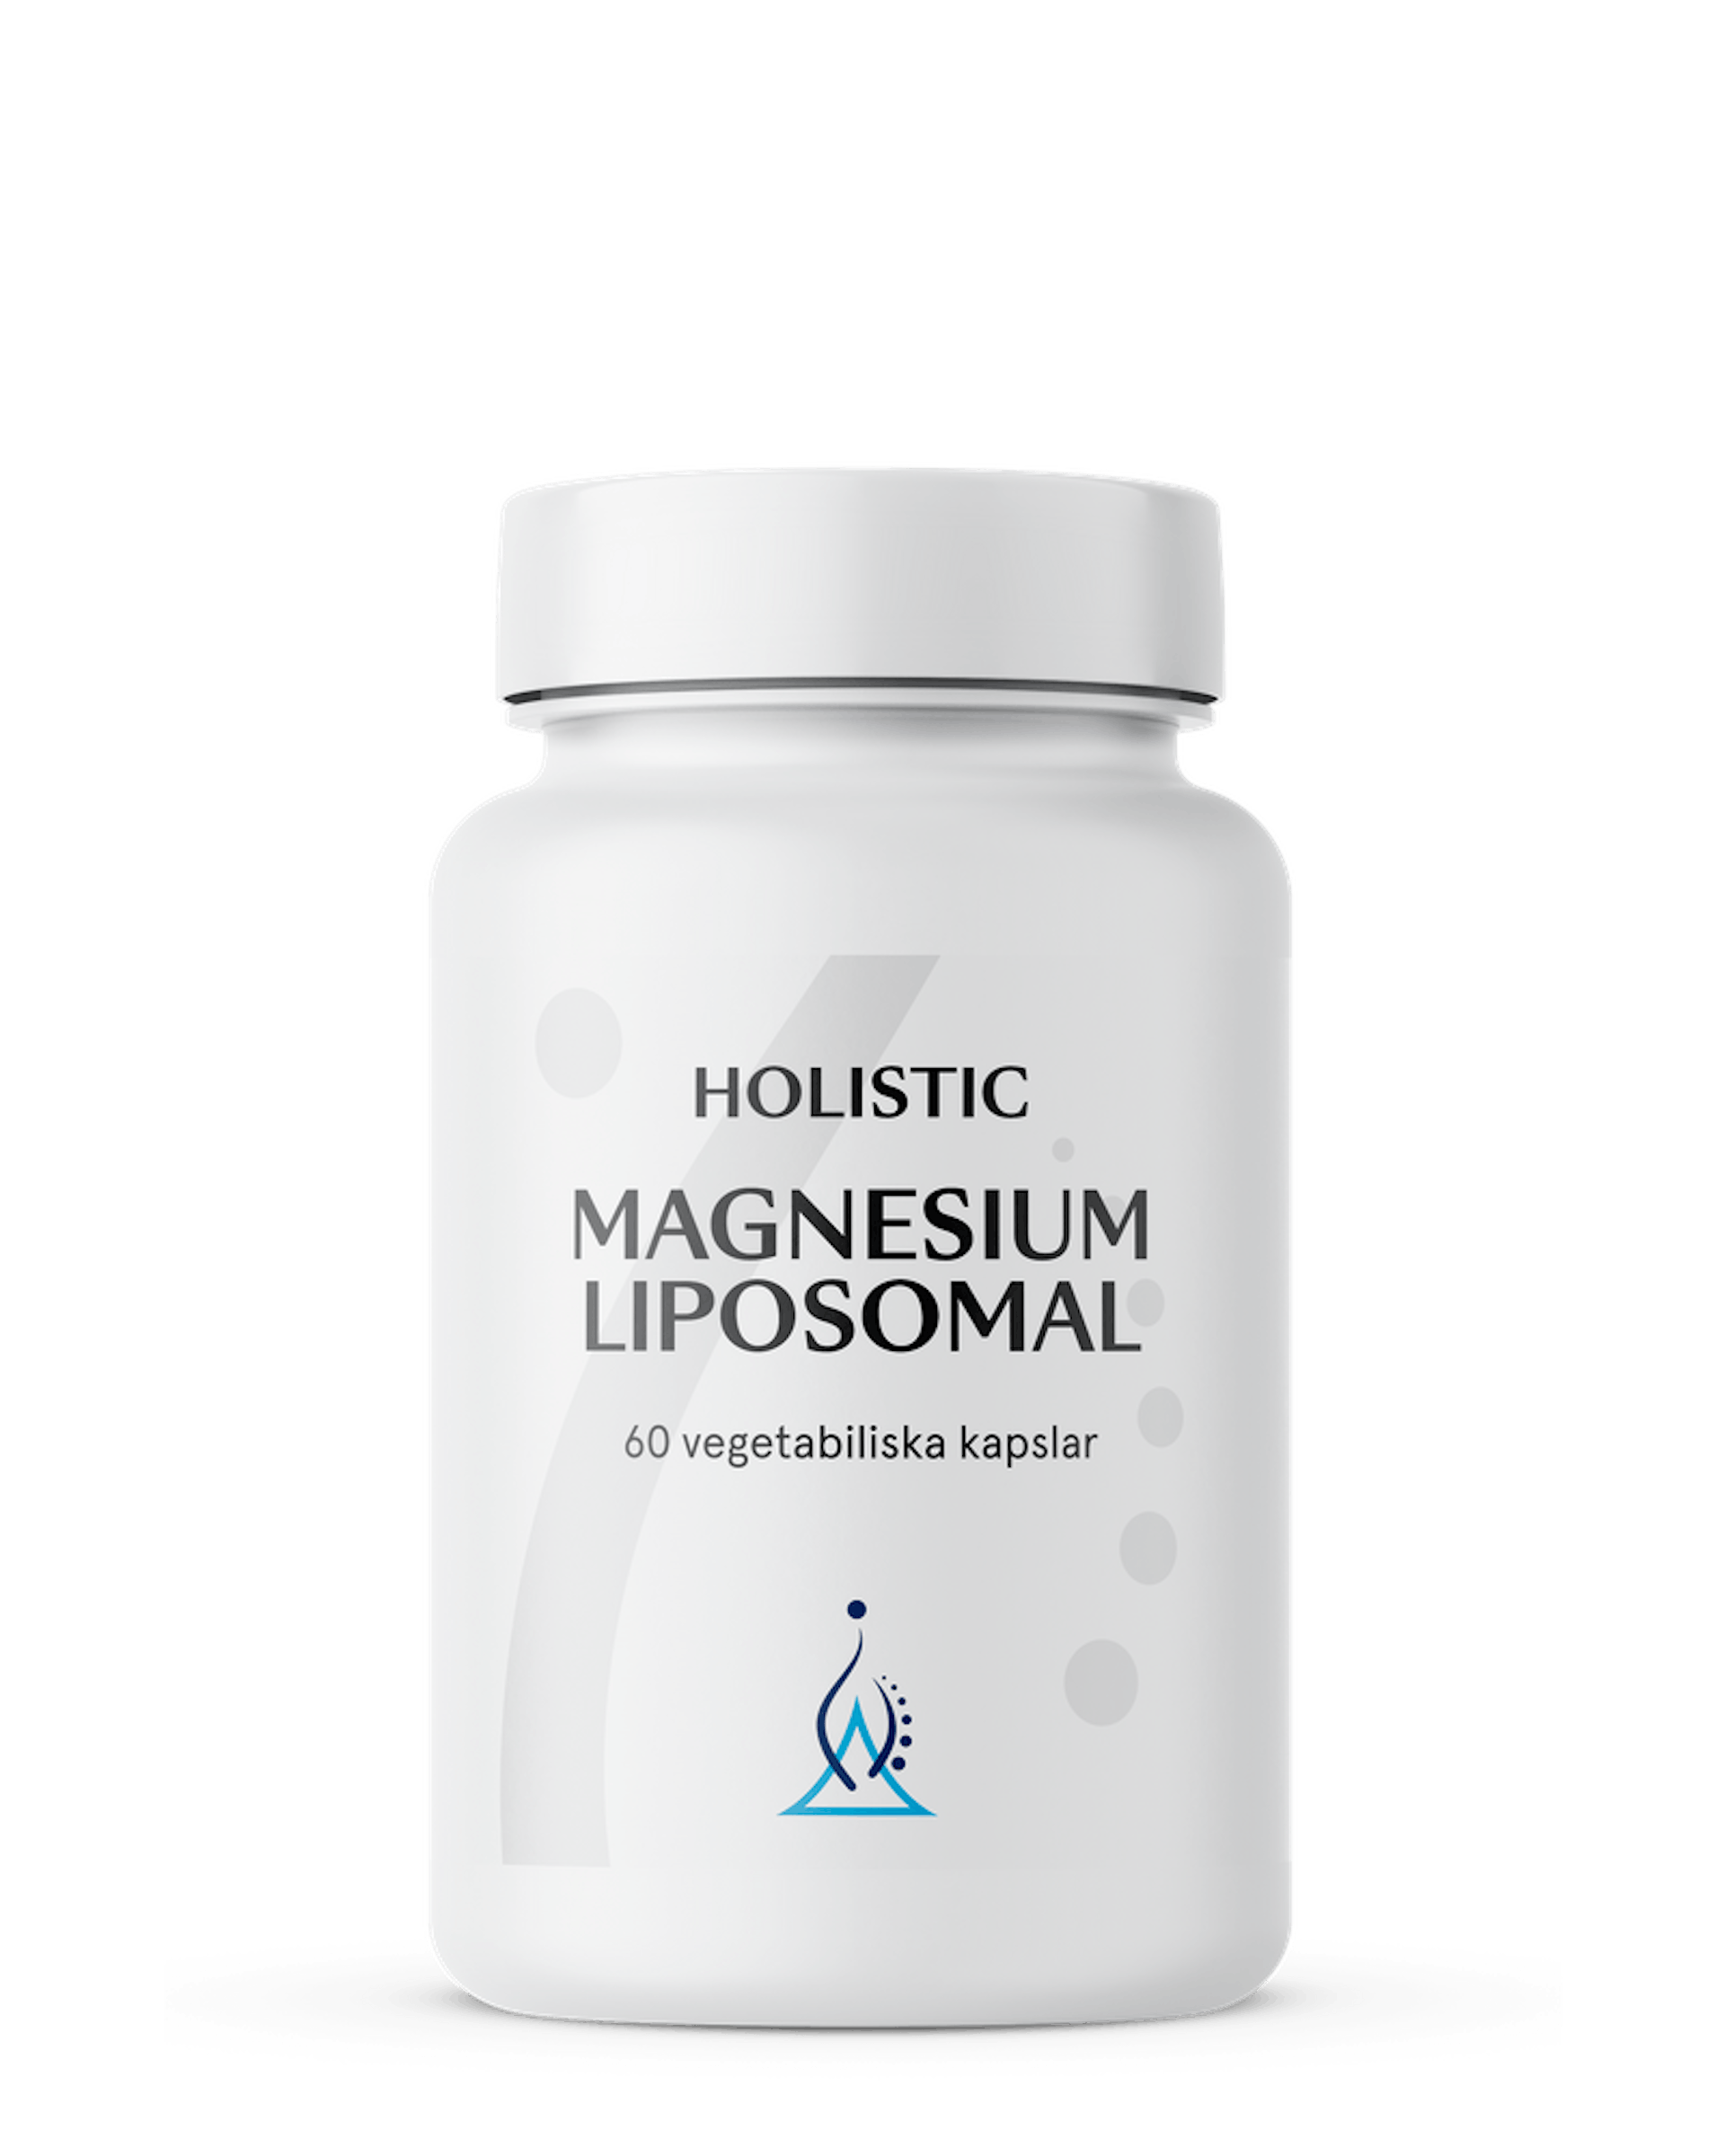 Magnesium liposomal 60 kapslar (1 av 1)